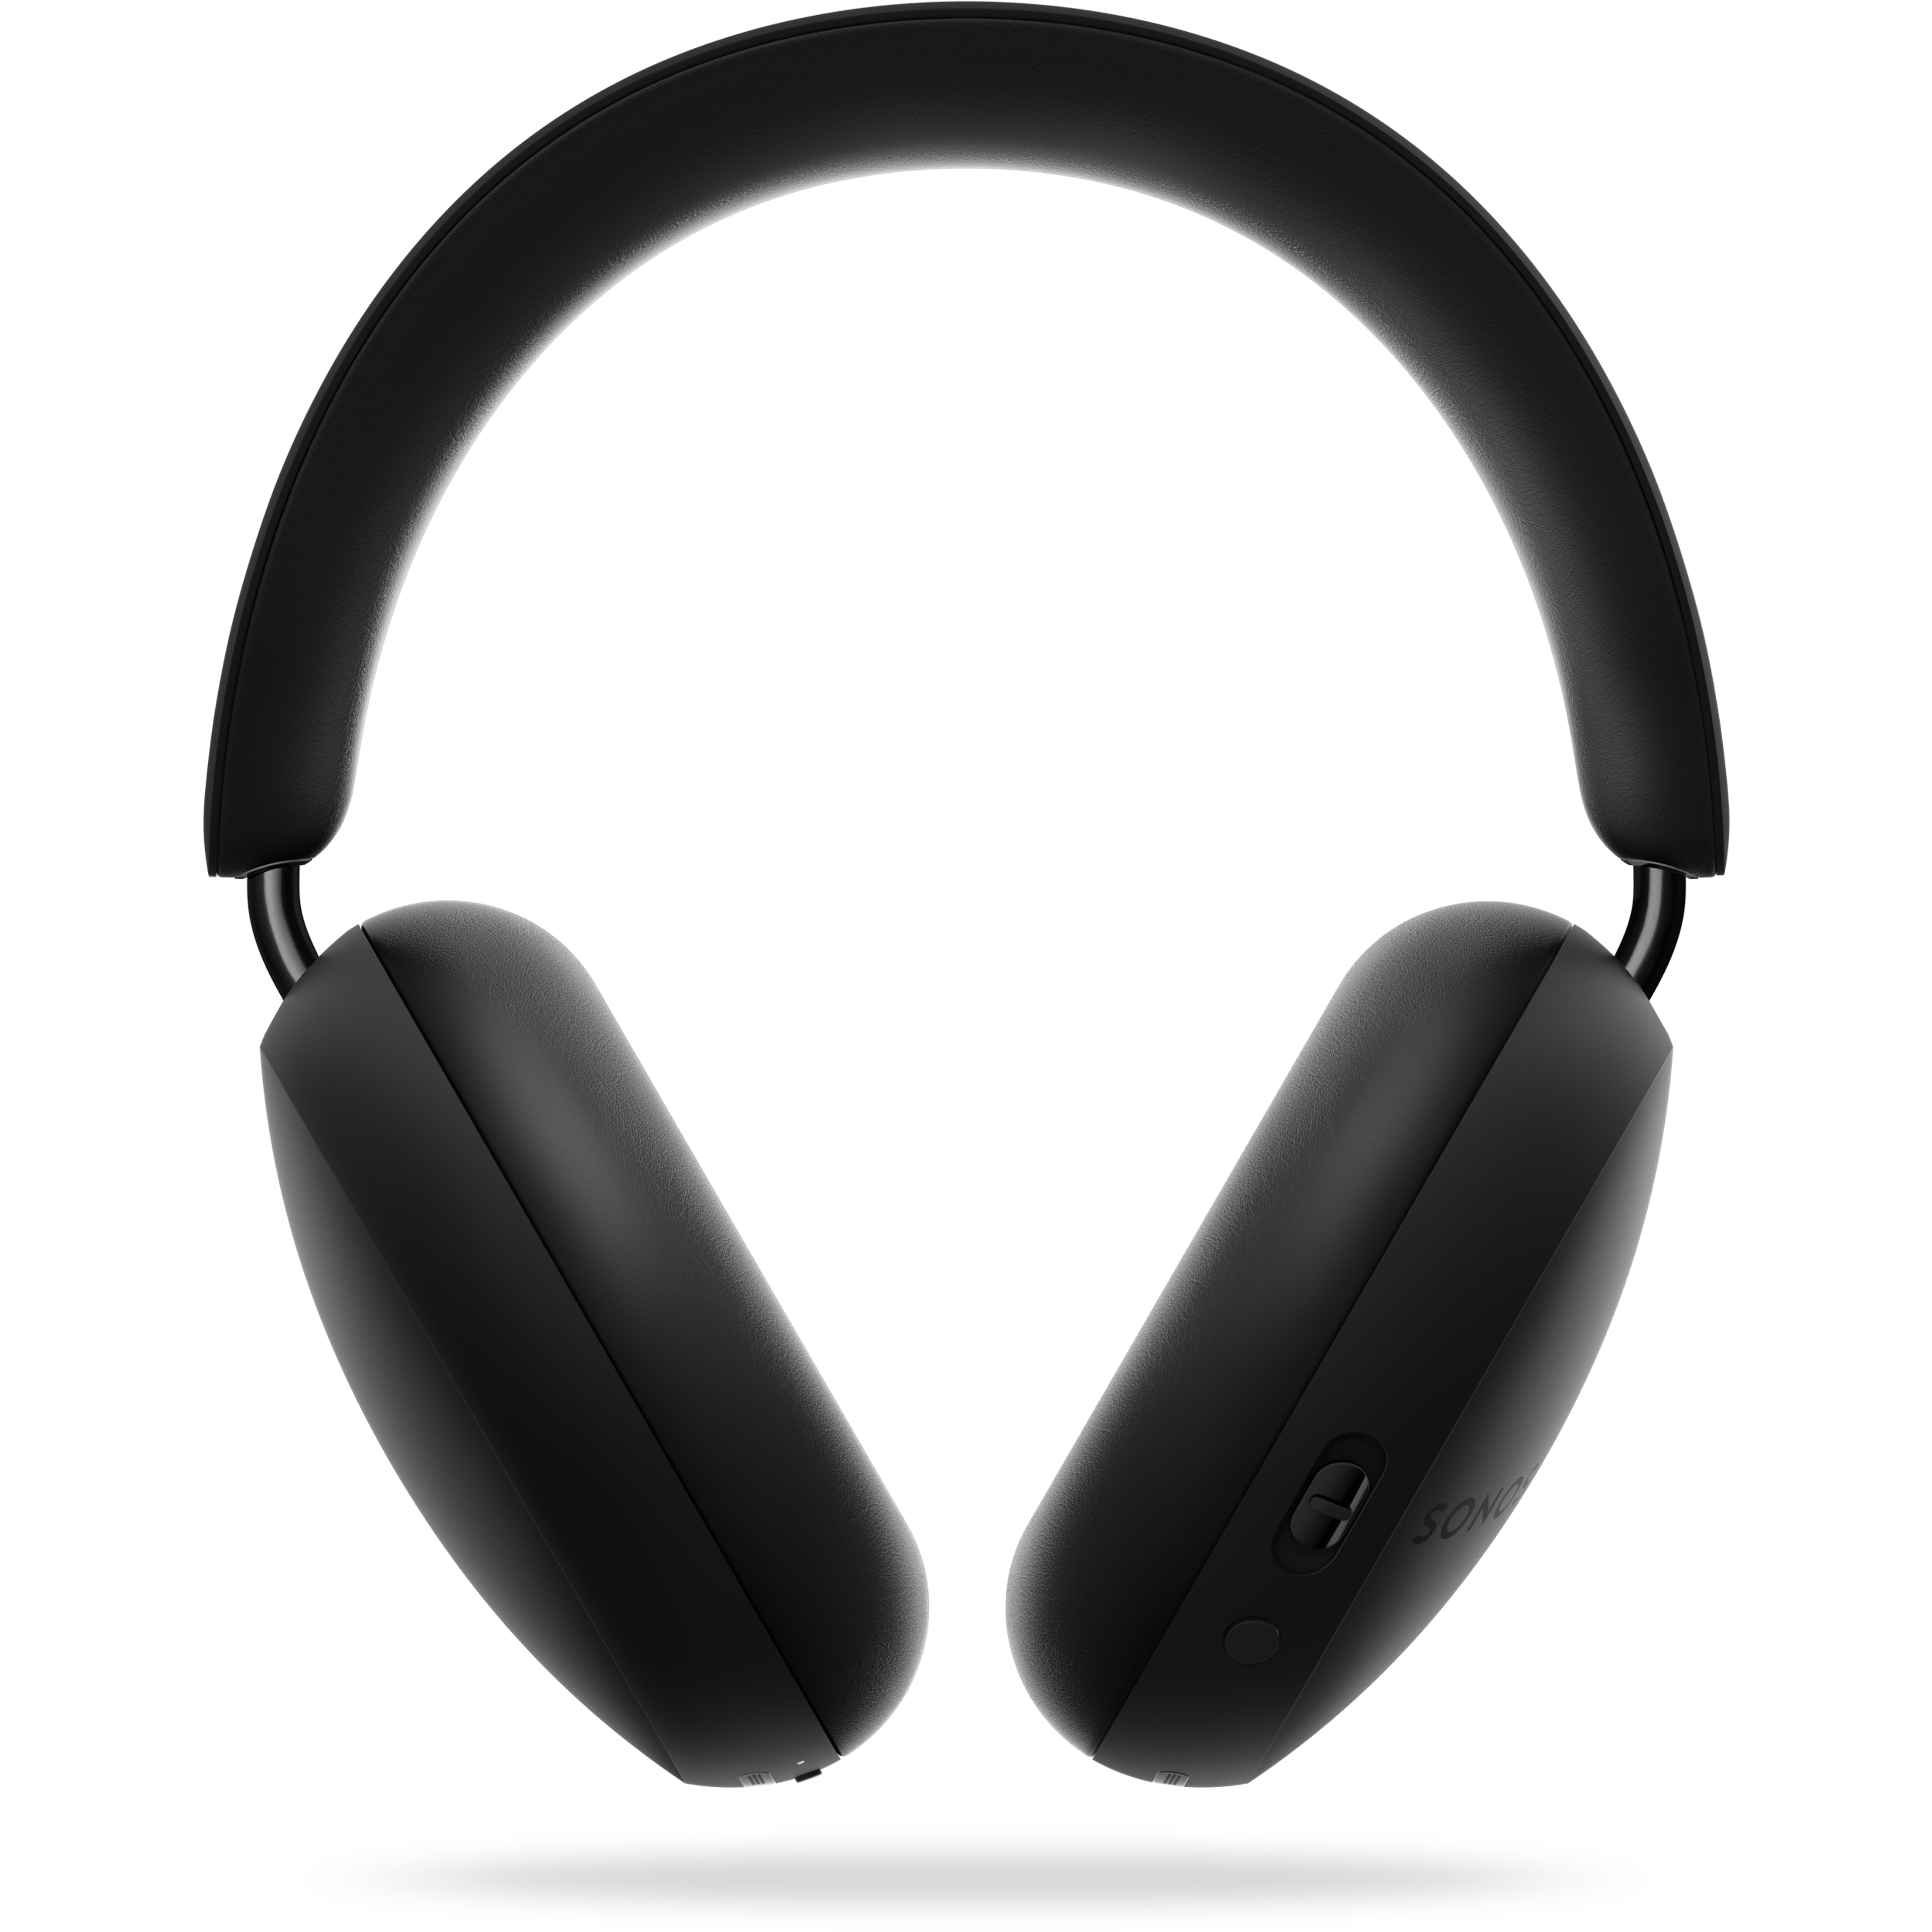 Sonos Ace-hovedtelefoner i sort, bagudvendt vinkel over skygge